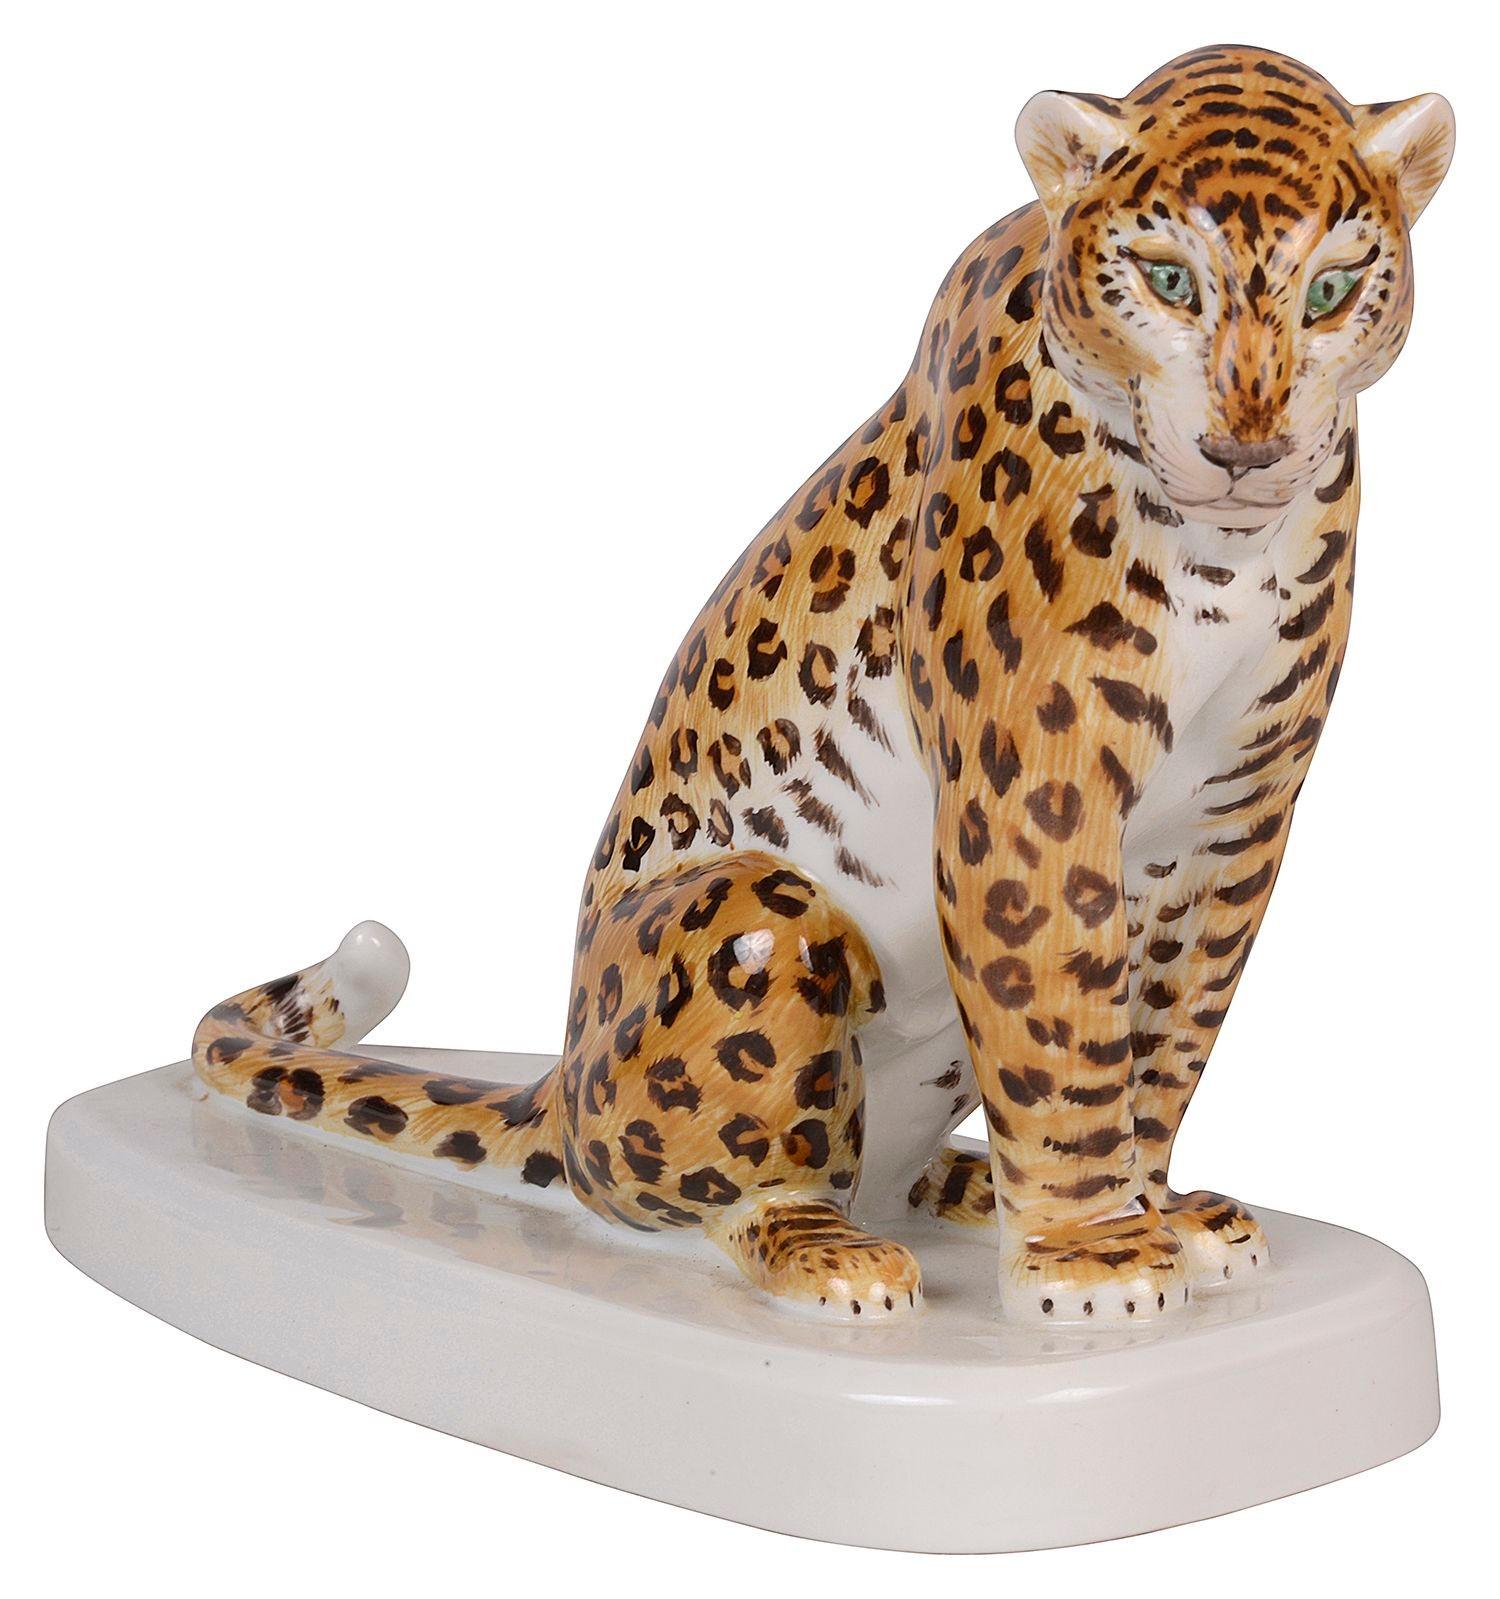 Ein charmantes Meissener Porzellanmodell eines sitzenden Leoparden auf weißem Sockel, signiert mit dem Meissener Blau gekreuzter Schwerter auf dem Sockel.

Los 71 61587 DSKZN